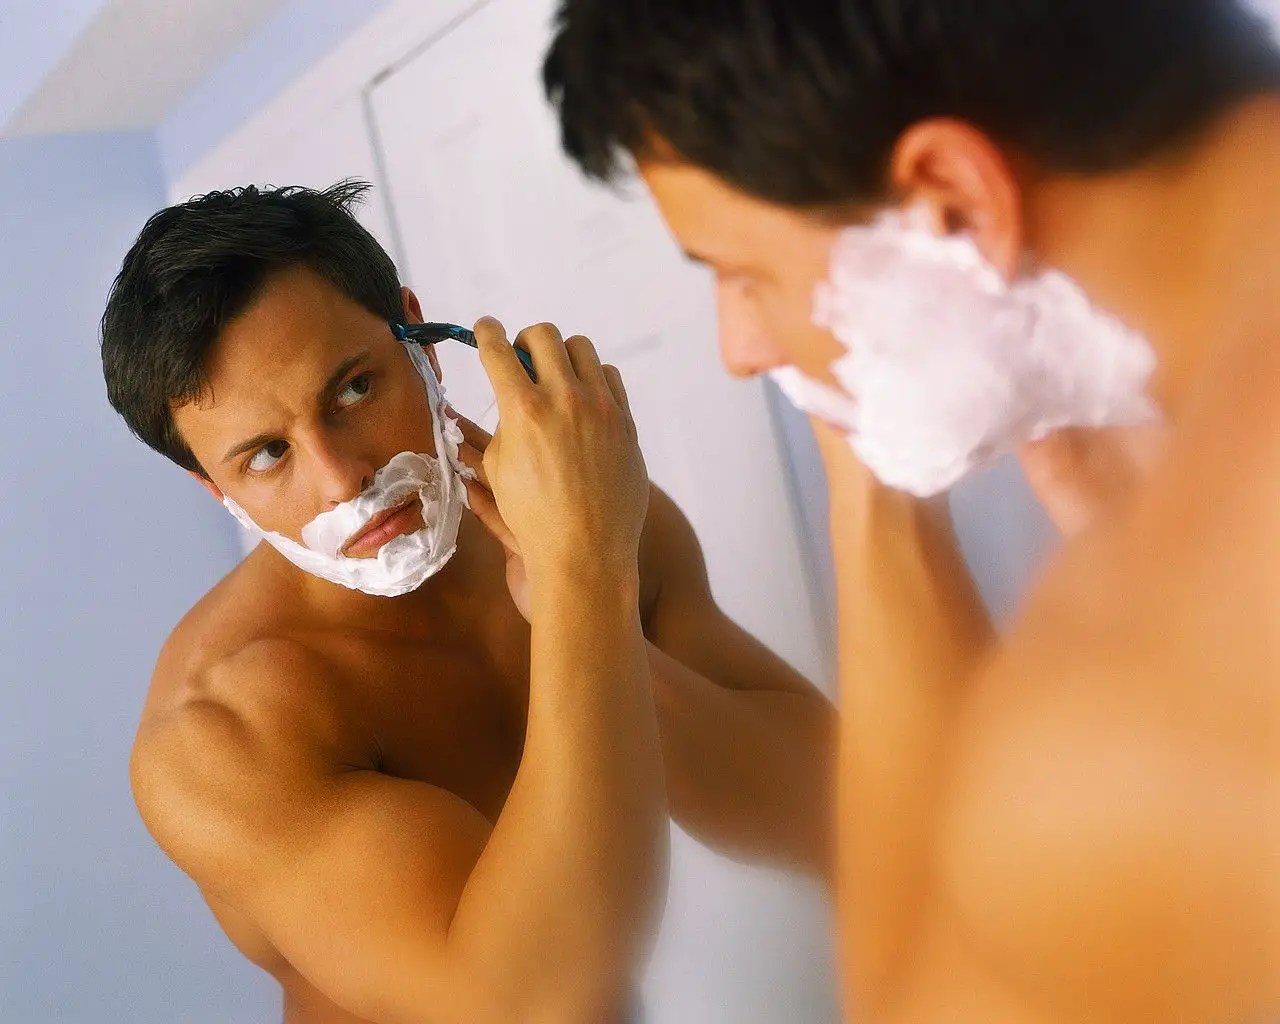 Cómo afeitar correctamente tips de cuidado personal https://noticiastu.com/belleza-moda/consejos-de-cuidado-personal-que-le-haran-la-vida-mas-facil/